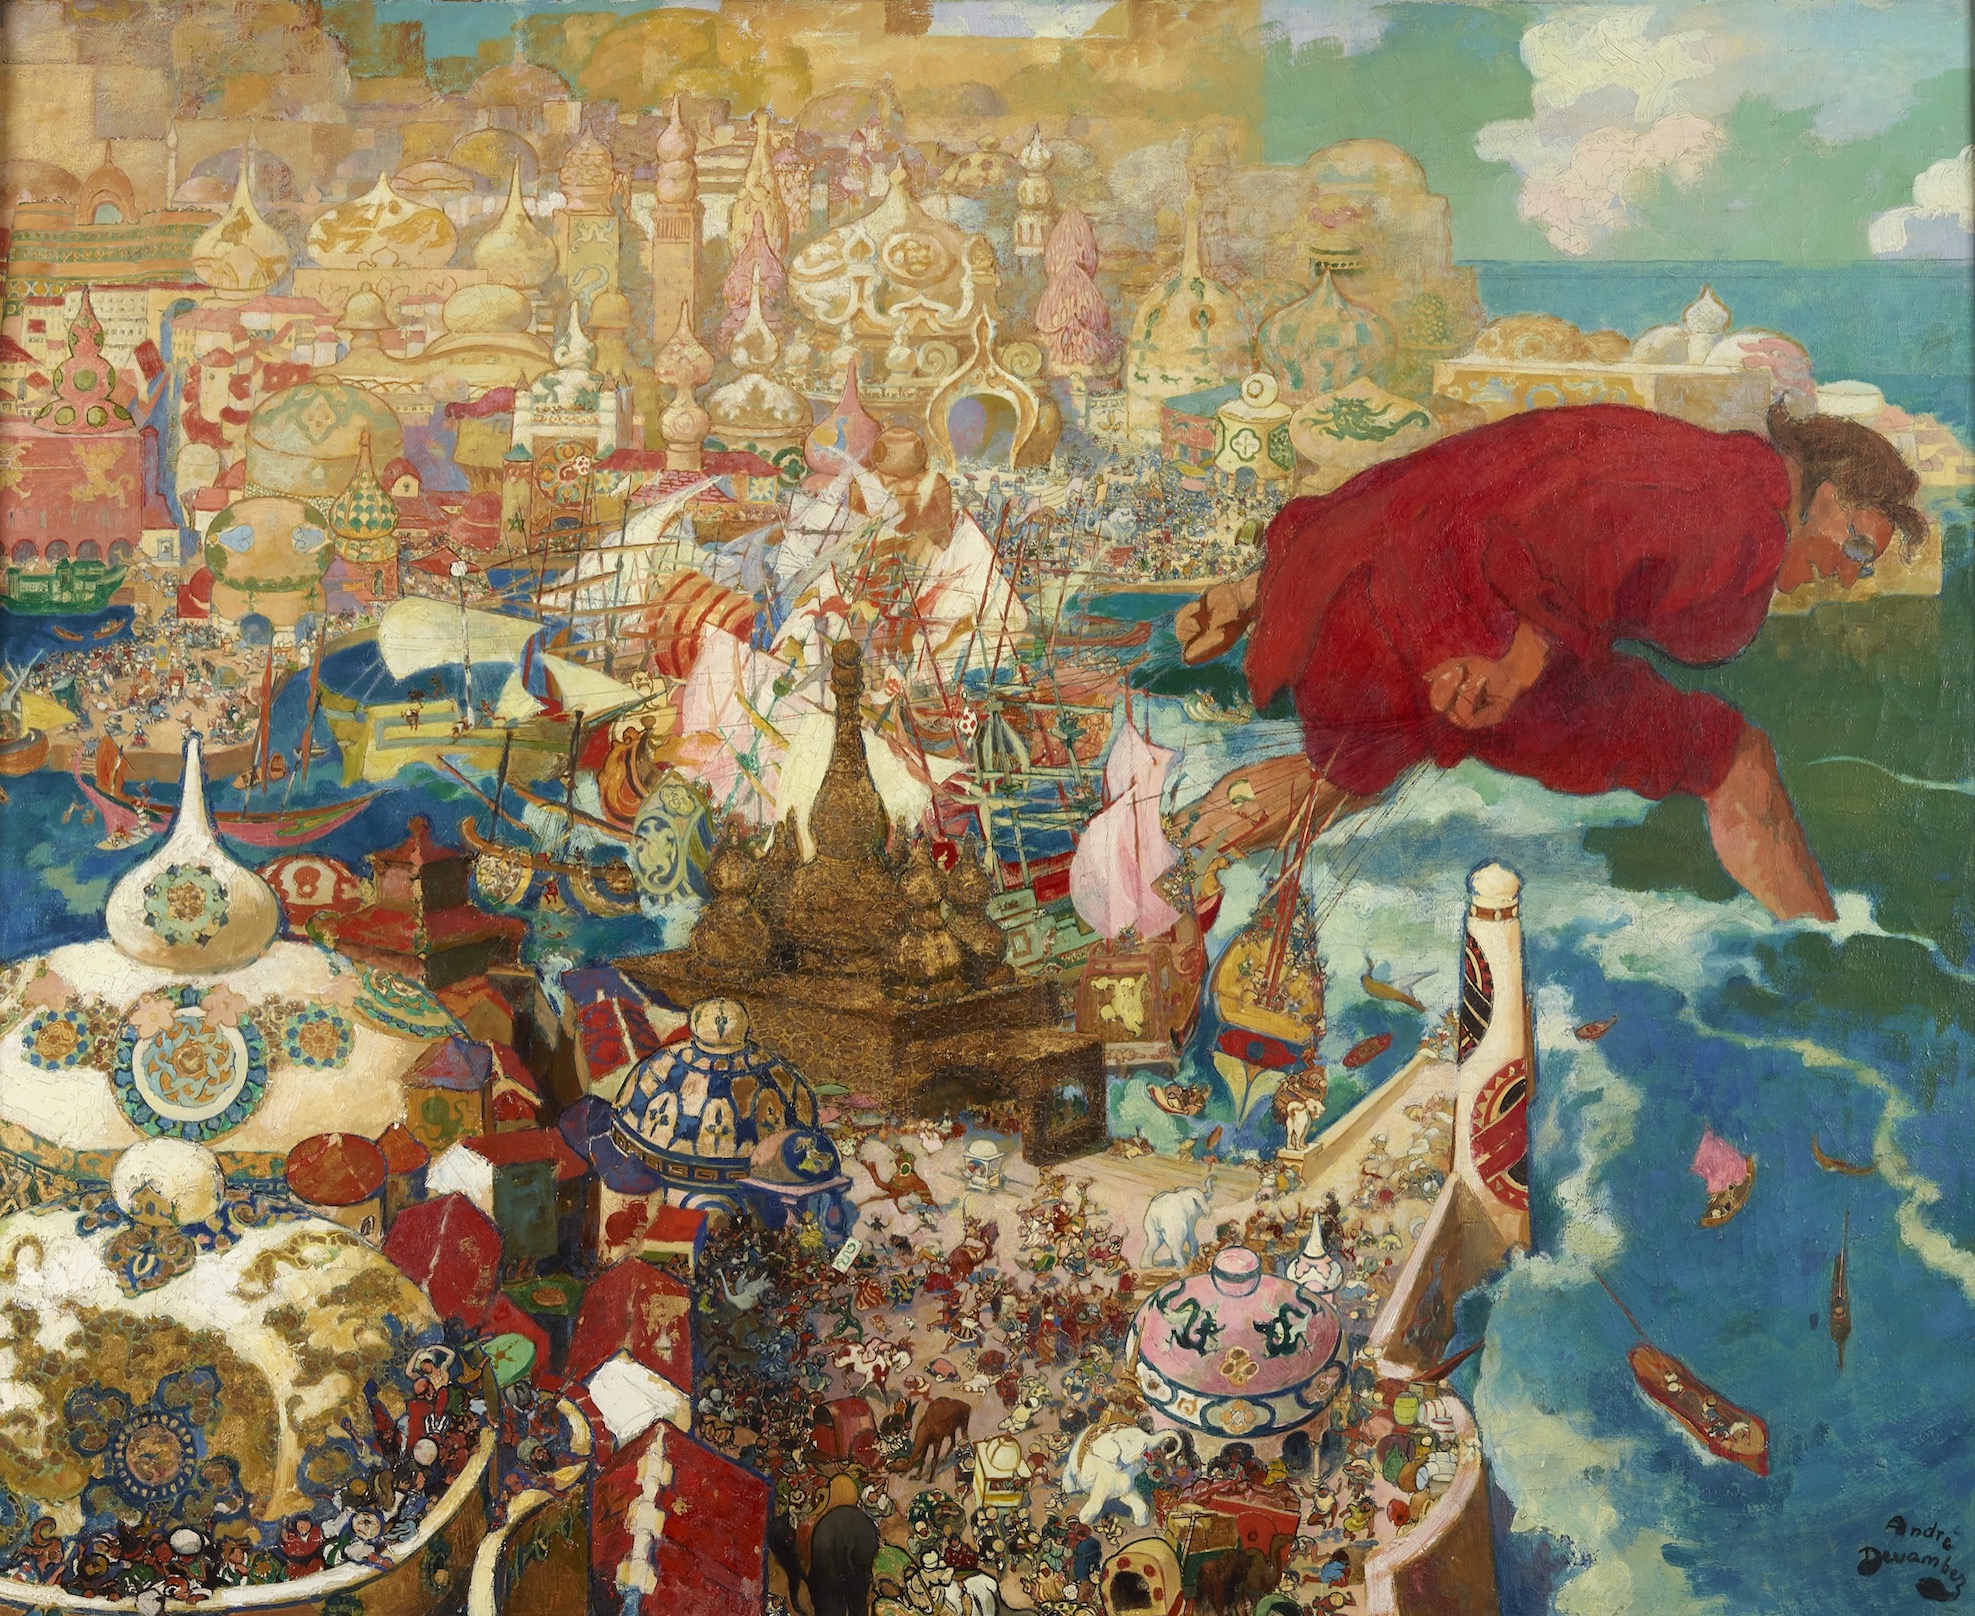 André Devambez (1867-1944), Gulliver enlève la flotte des Gros-Boutiens, 1921. Huile sur toile, 85 × 105 cm. Collection particulière.
© Musée des Beaux-Arts de Rennes – J.-M. Salingue